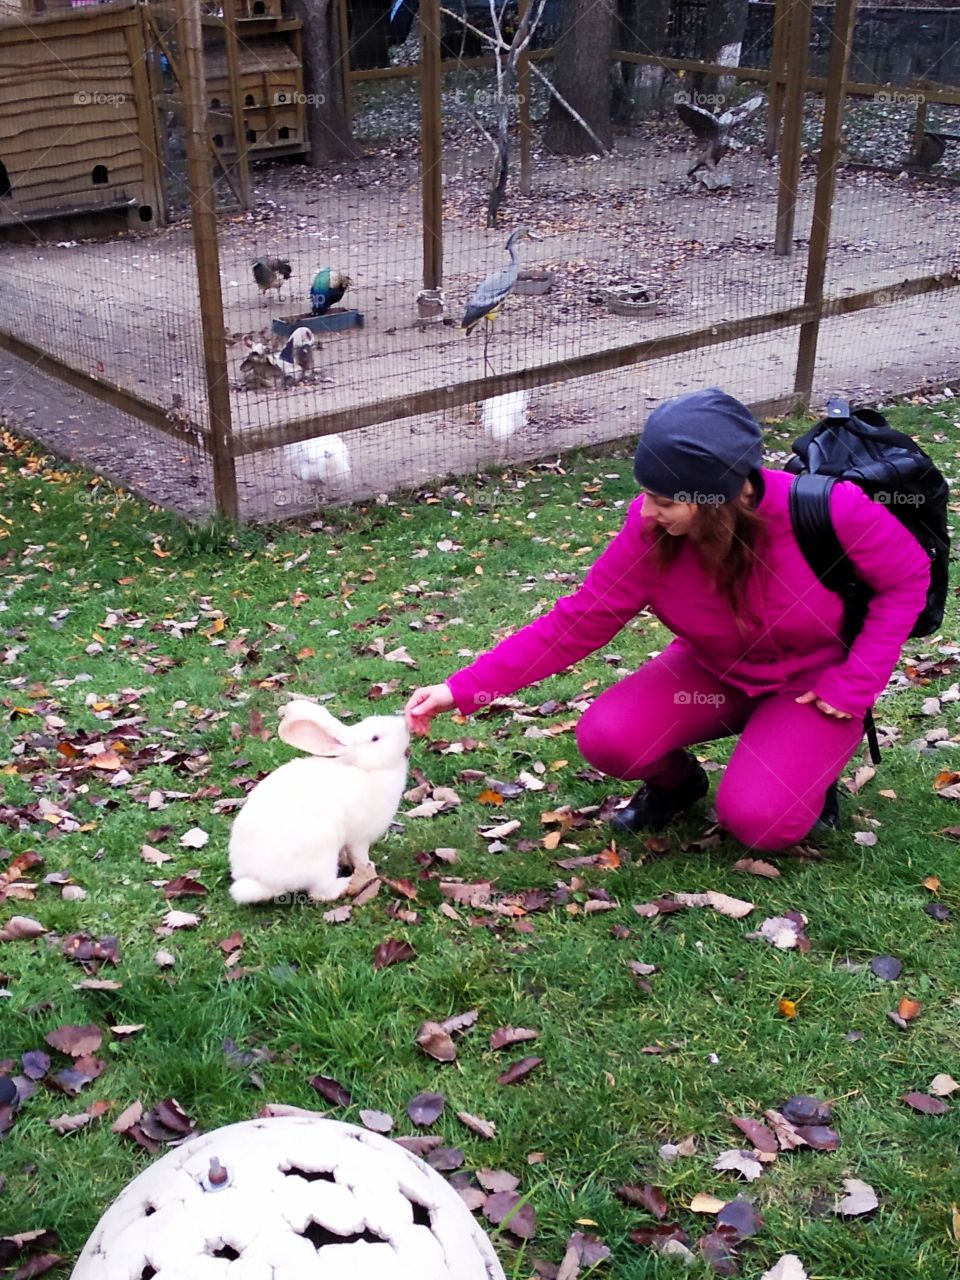 Осенью в парке на зелёной траве сидит девушка в розовом костюме с рюкзаком, которая нежно прикасается рукой к белому кролику на фоне клетки с птицами.